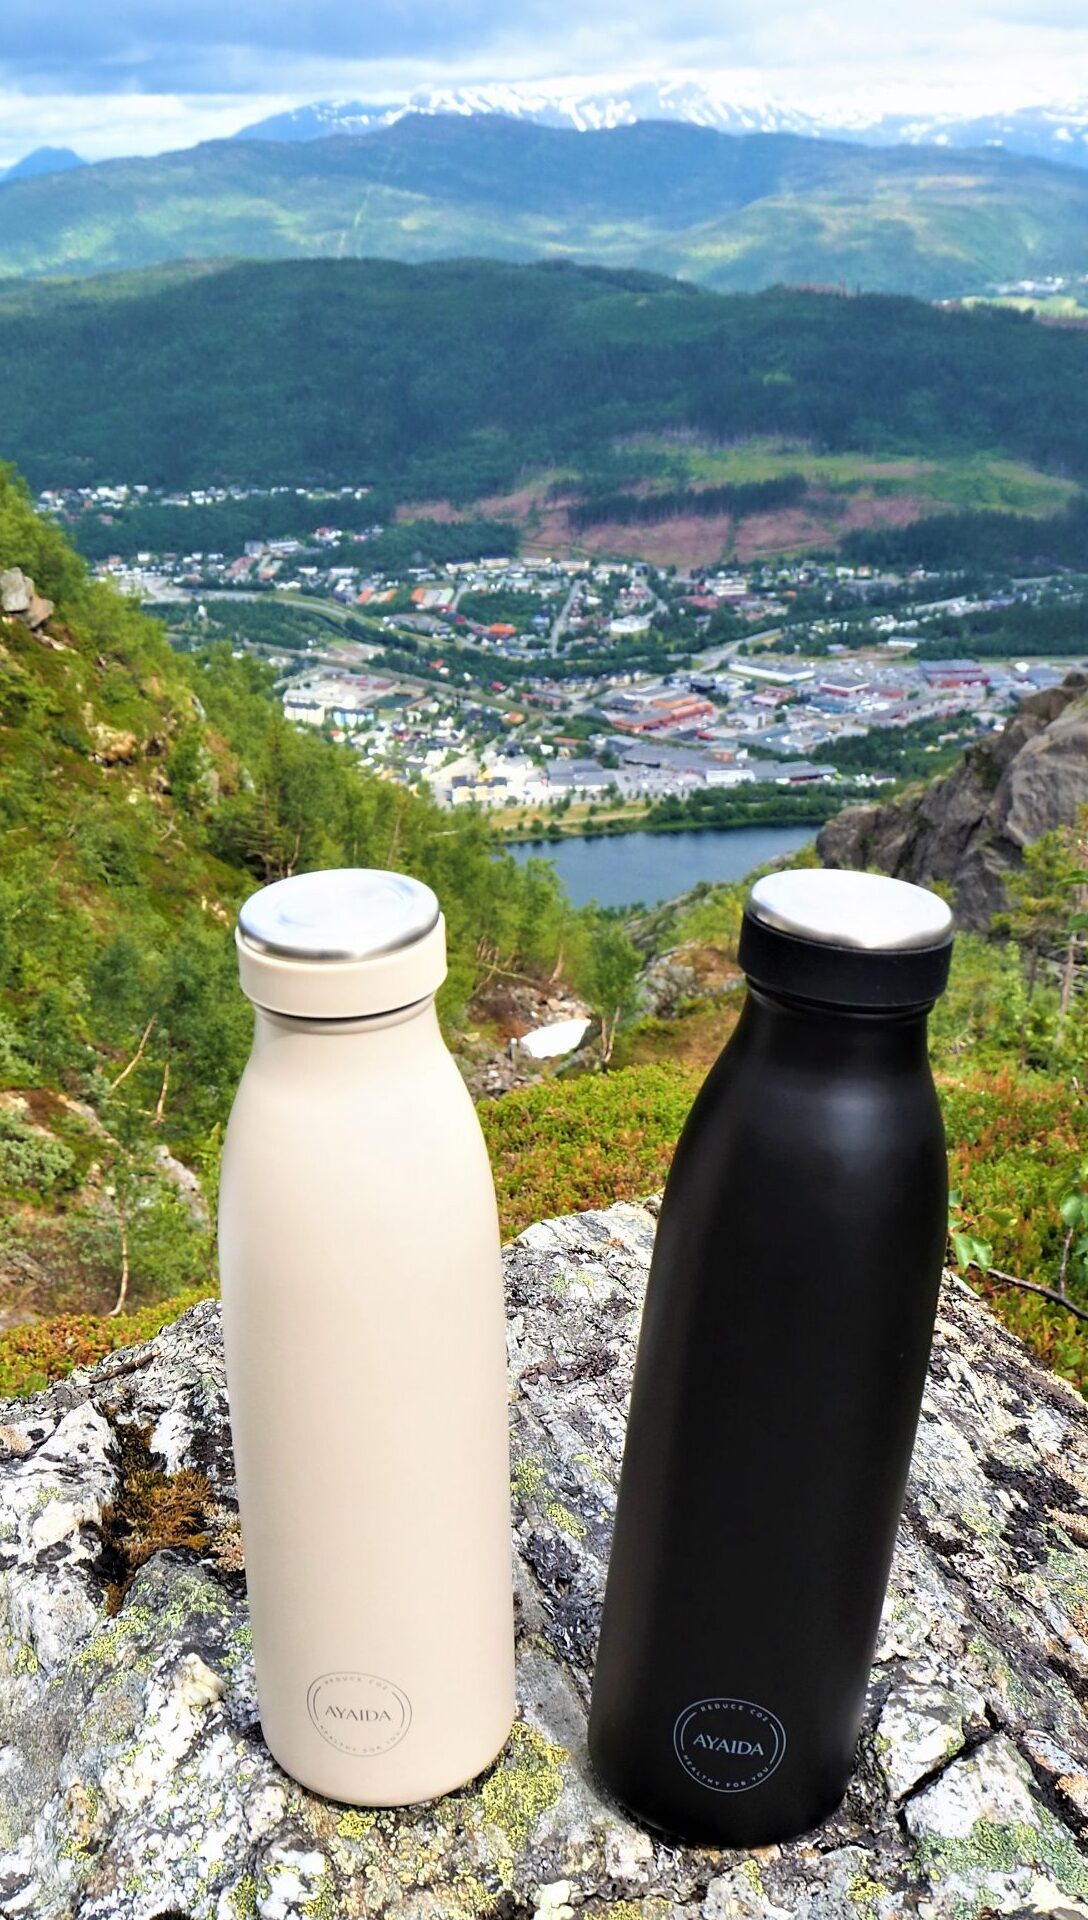 Vandflasker fra AyaogIda med udsigt i Norge